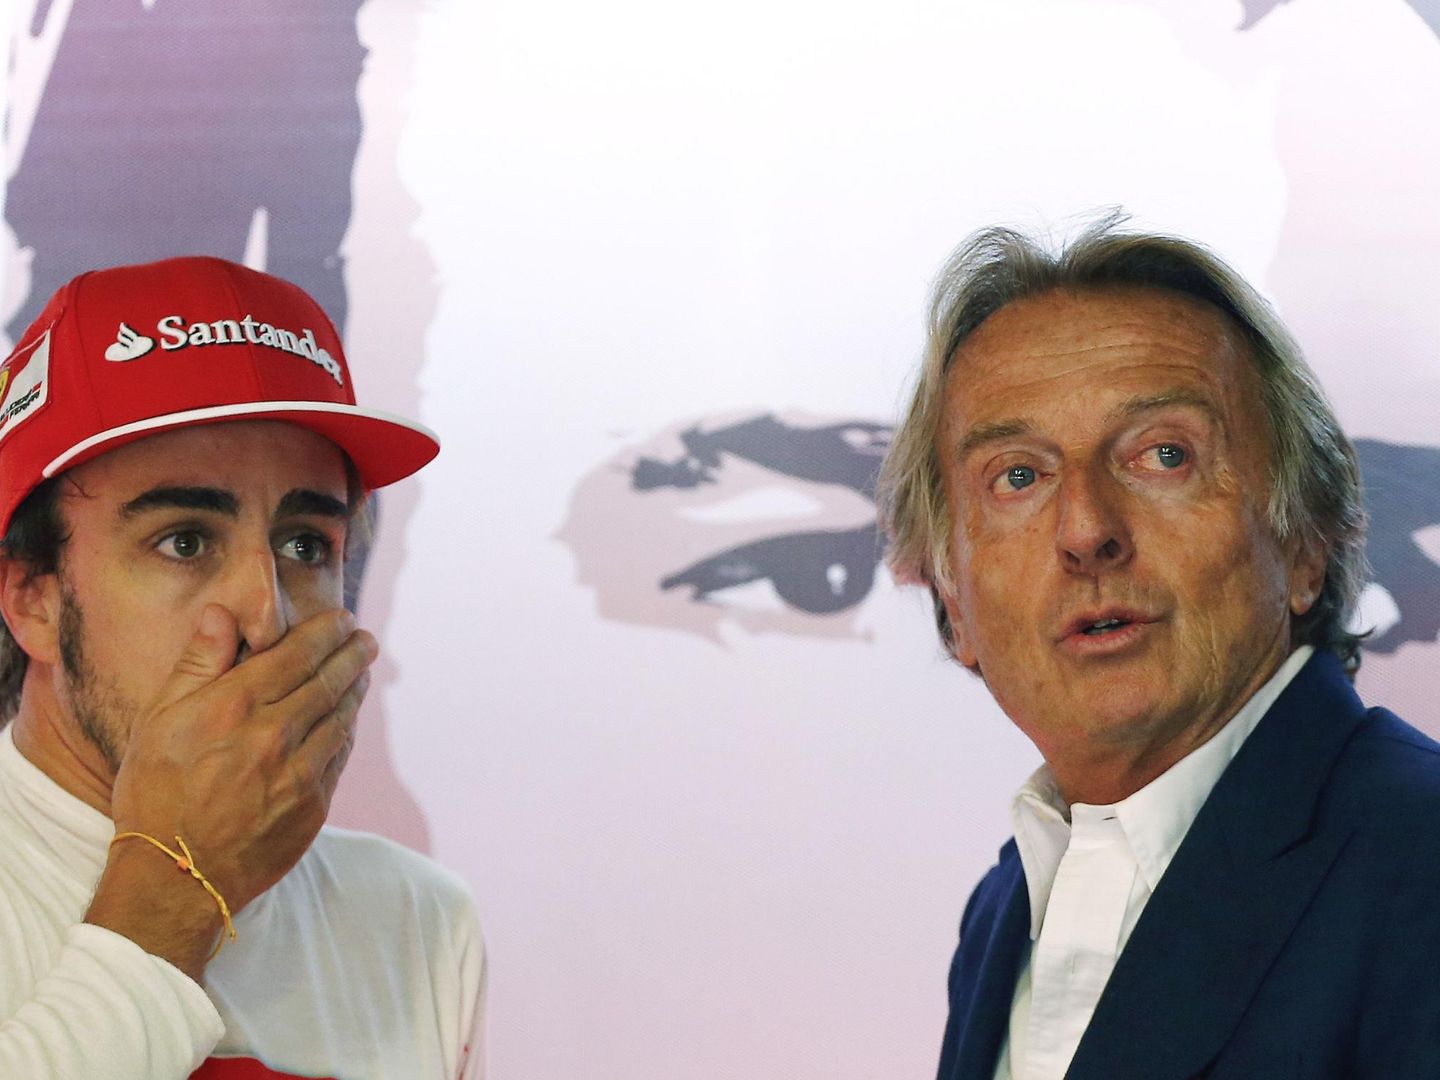 Montezemolo no quiso atender a las peticiones de Domenicali y Alonso, y perdió el tren de la Fórmula 1 a finales de la década pasada